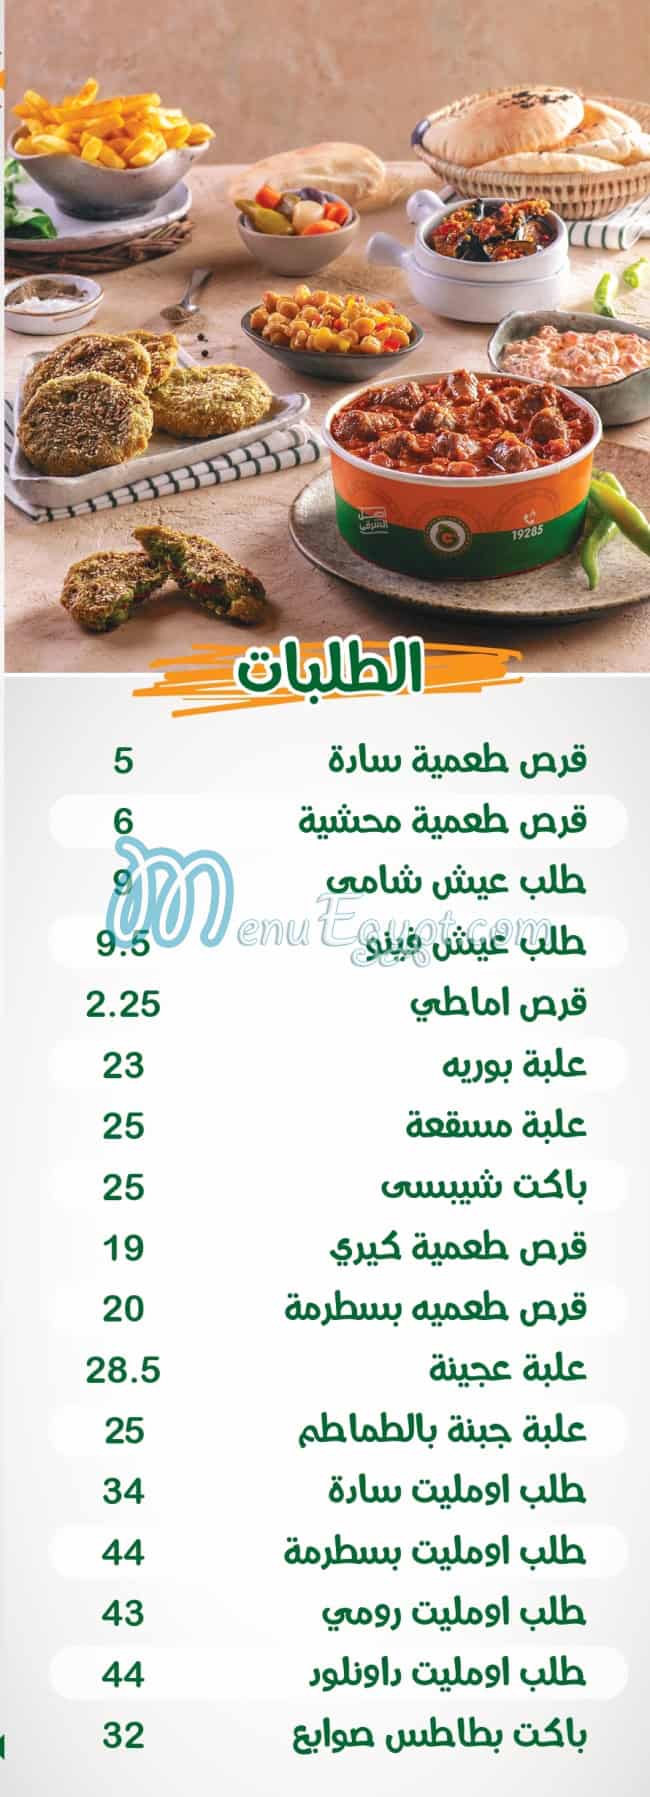 El Ga3an menu